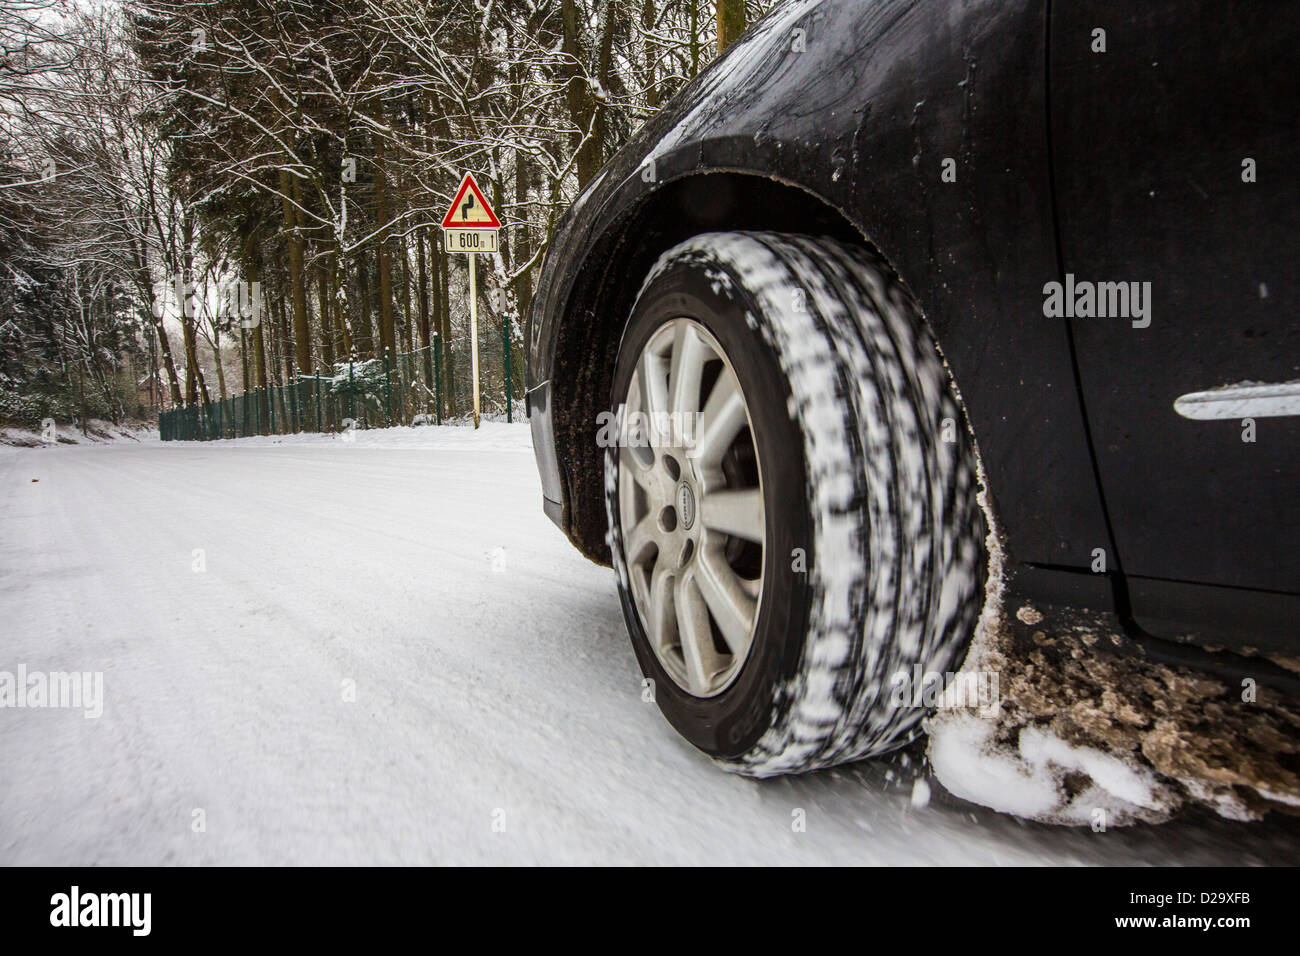 Auto mit Winter Reifen fährt auf einer Straße, komplett mit Schnee